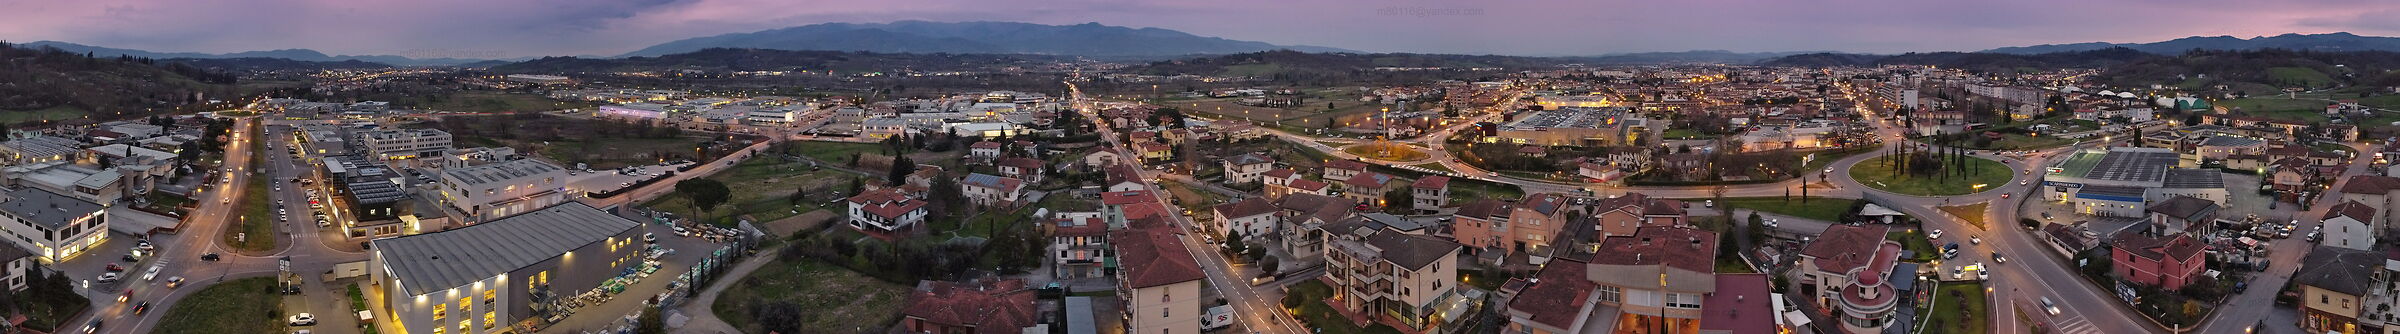 City at dusk (Pano drone)...